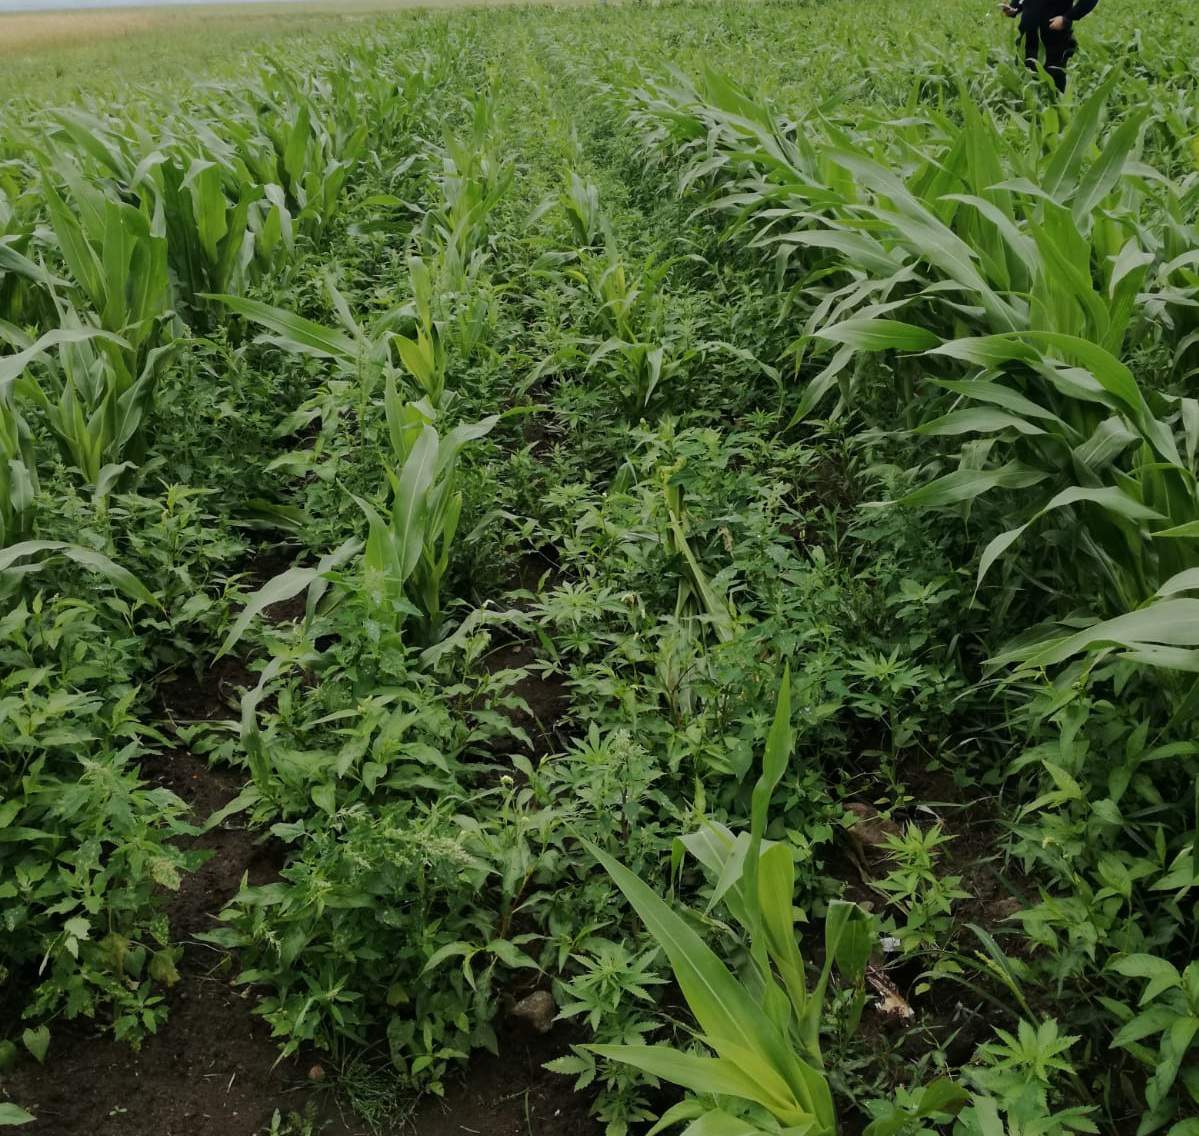 Ponad 500 krzaków marihuany znaleźli policjanci z Podlasia na polu kukurydzy pod Kolnem